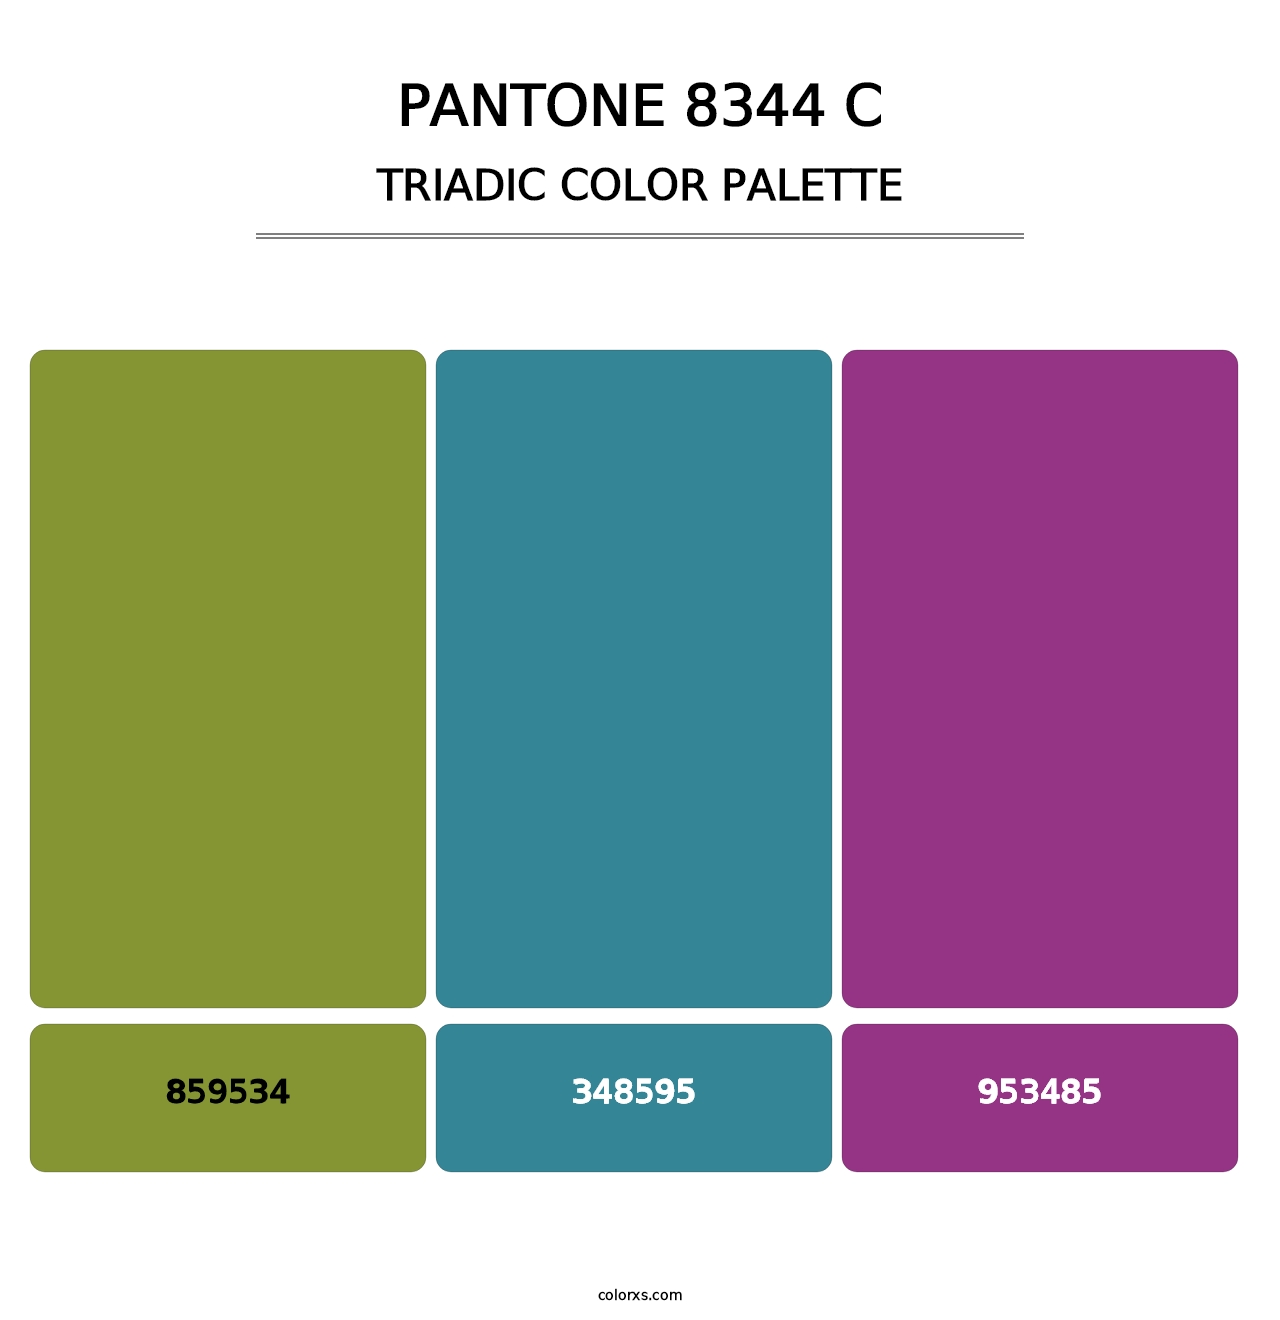 PANTONE 8344 C - Triadic Color Palette